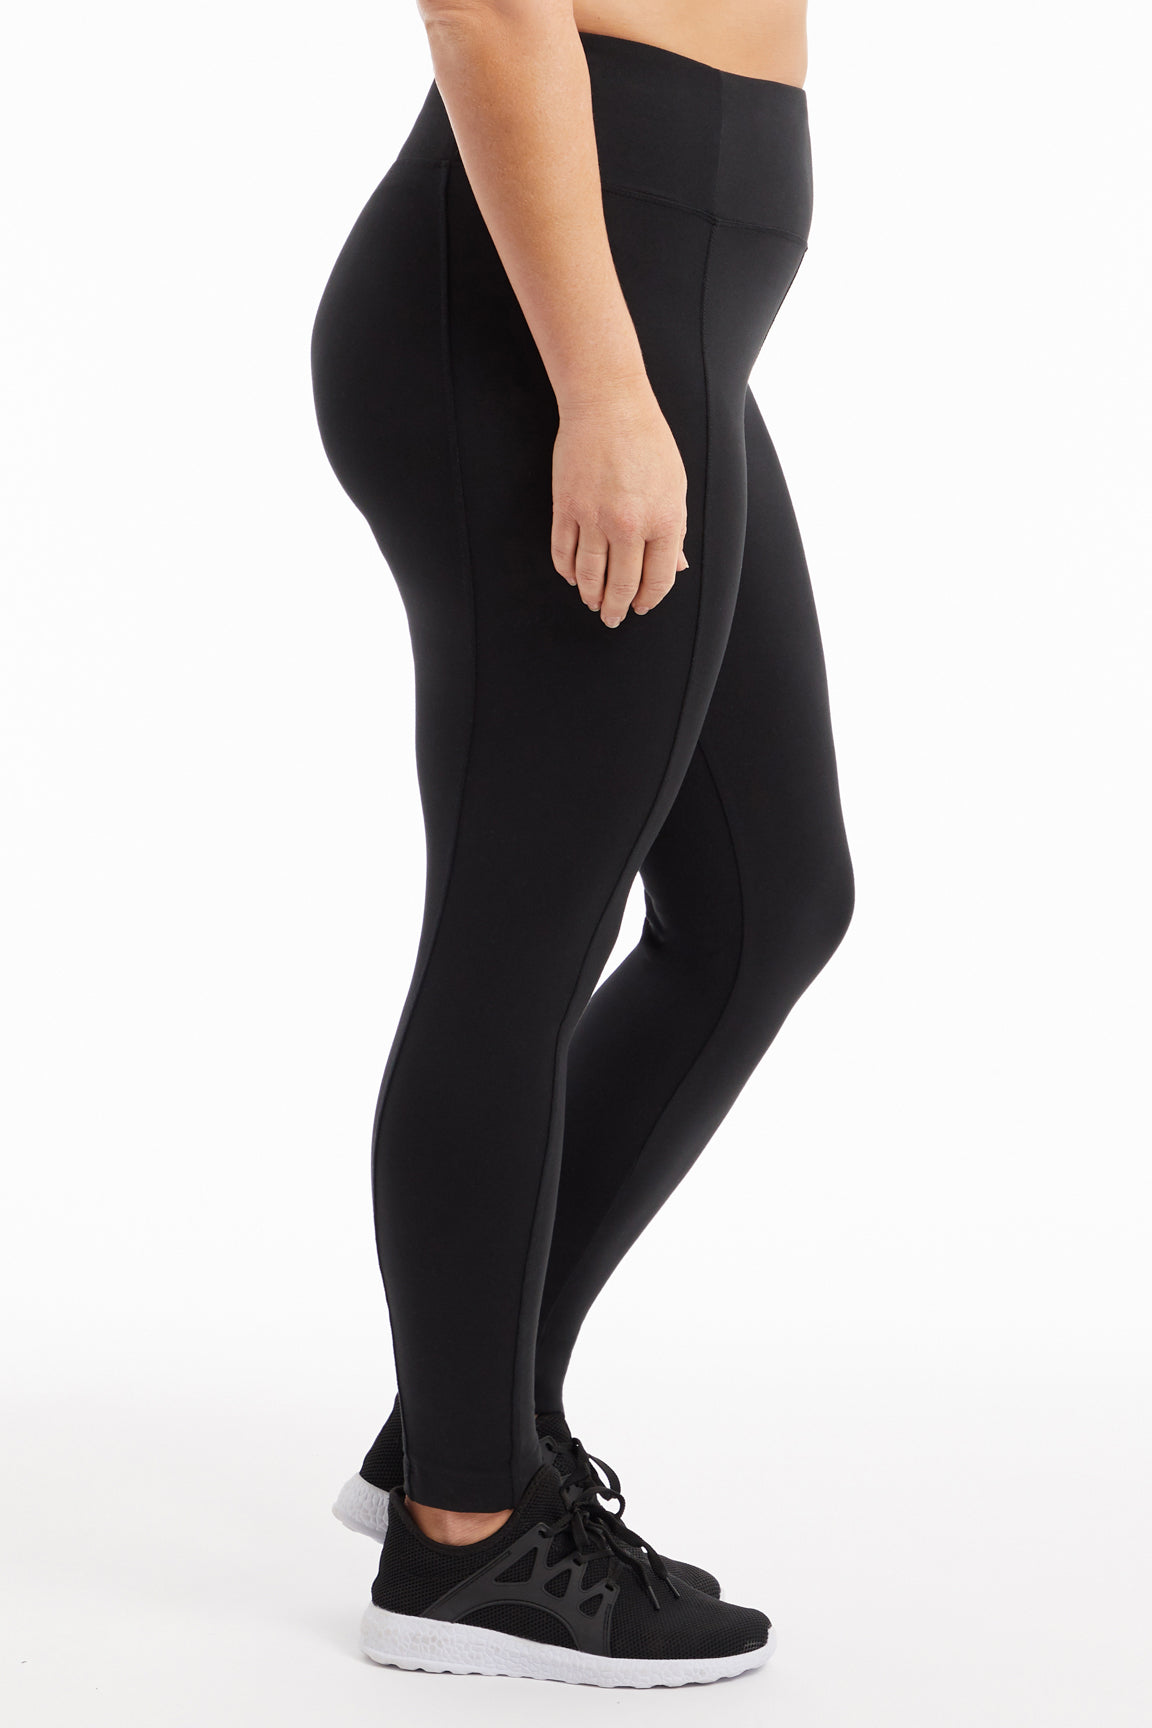 FITVALEN Women Anti Cellulite Compression Leggings Body Shaper